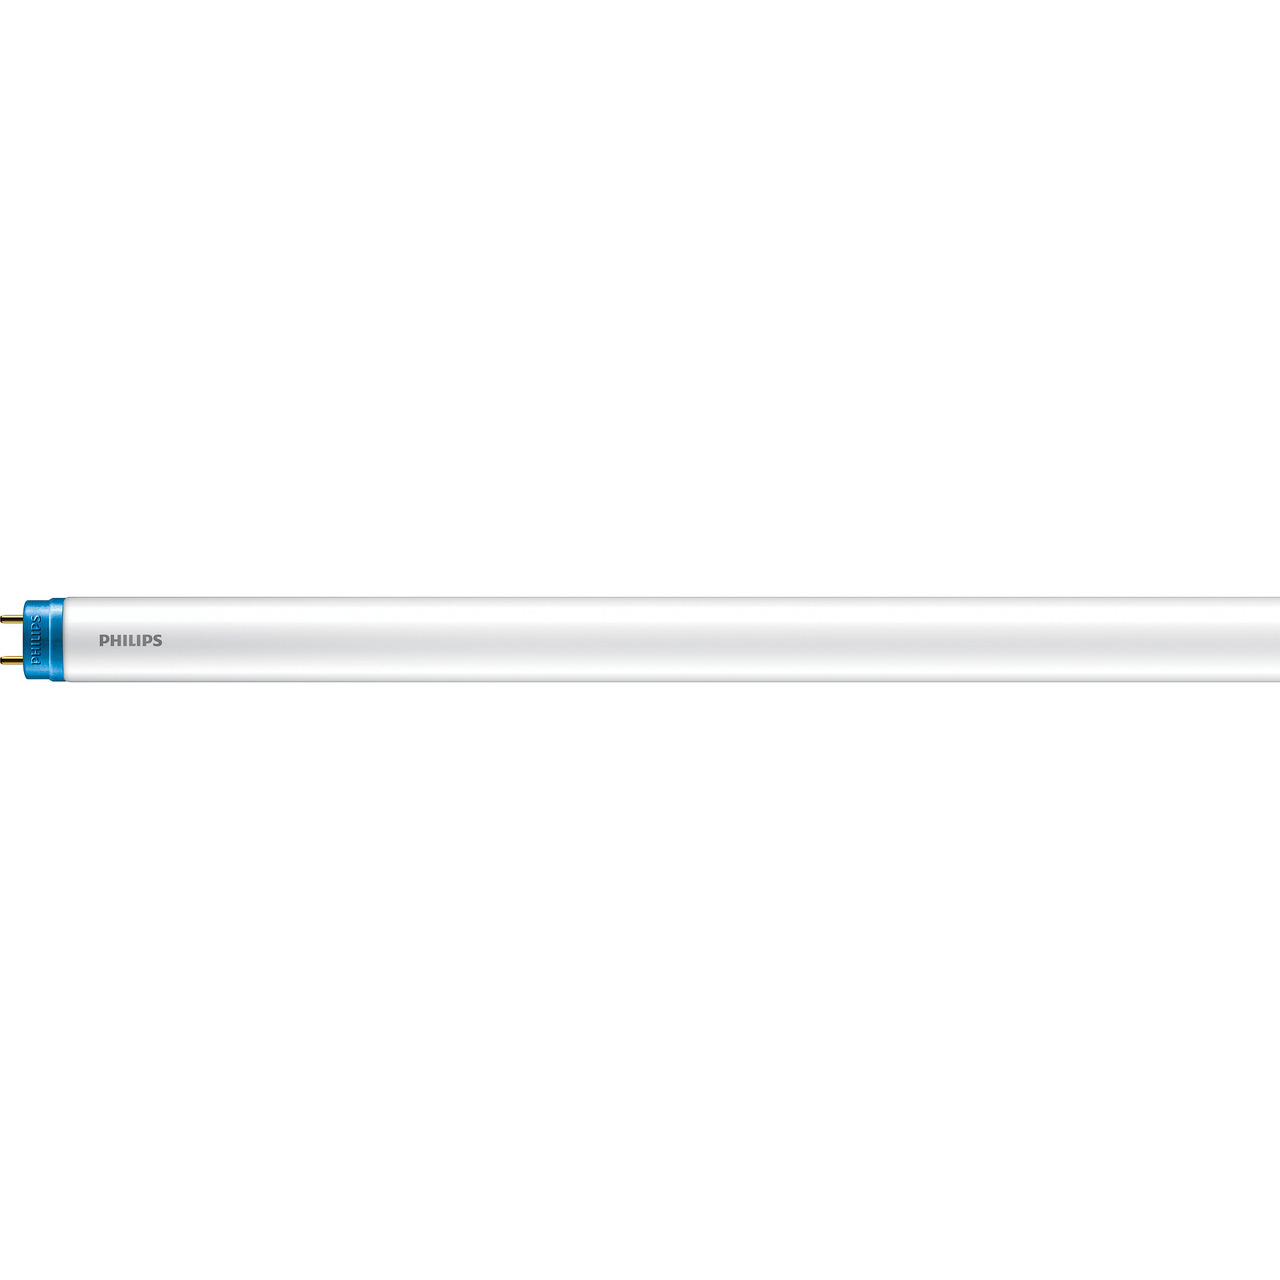 Philips 8-W-T8-LED-Röhrenlampe CorePro LEDtube- 800 lm- 600 mm- kaltweiss (6500 K)- KVG-VVG unter Beleuchtung